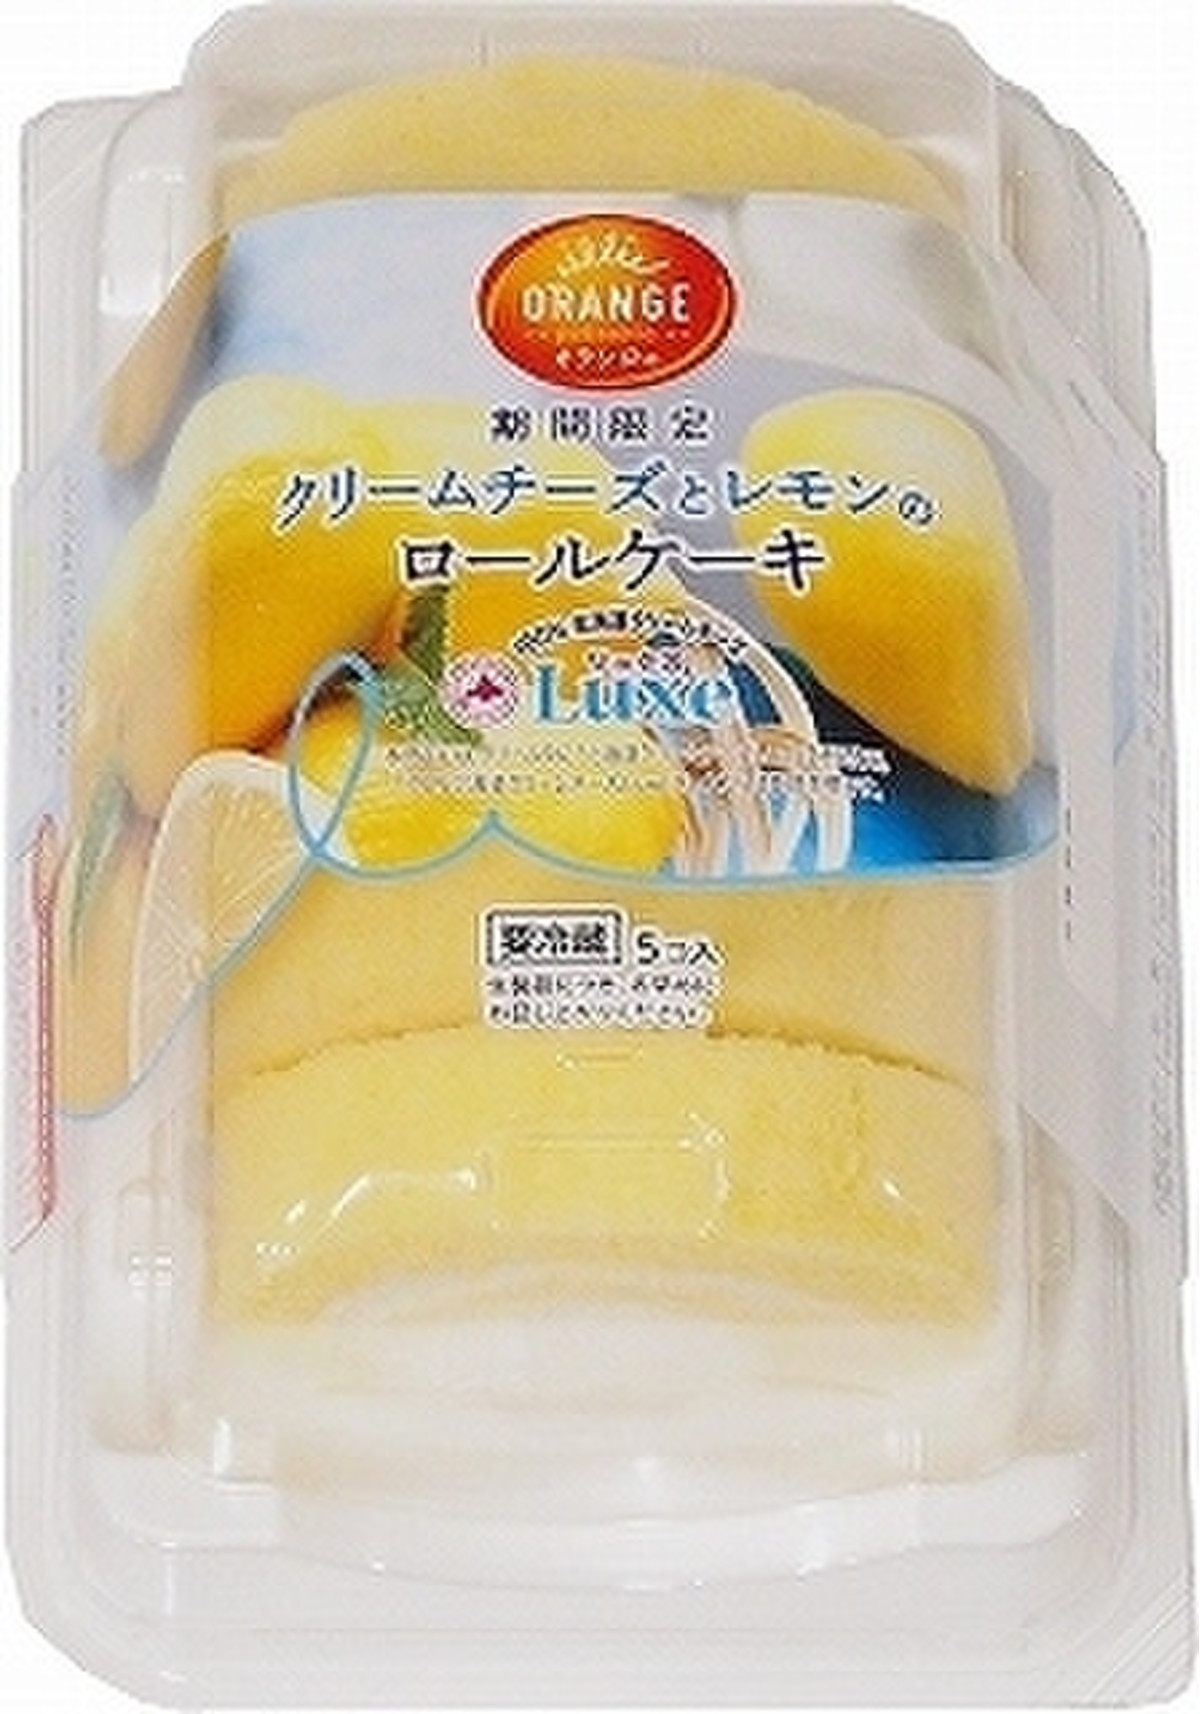 オランジェ クリームチーズとレモンのロールケーキ パック5個 製造終了 のクチコミ 評価 カロリー 値段 価格情報 もぐナビ